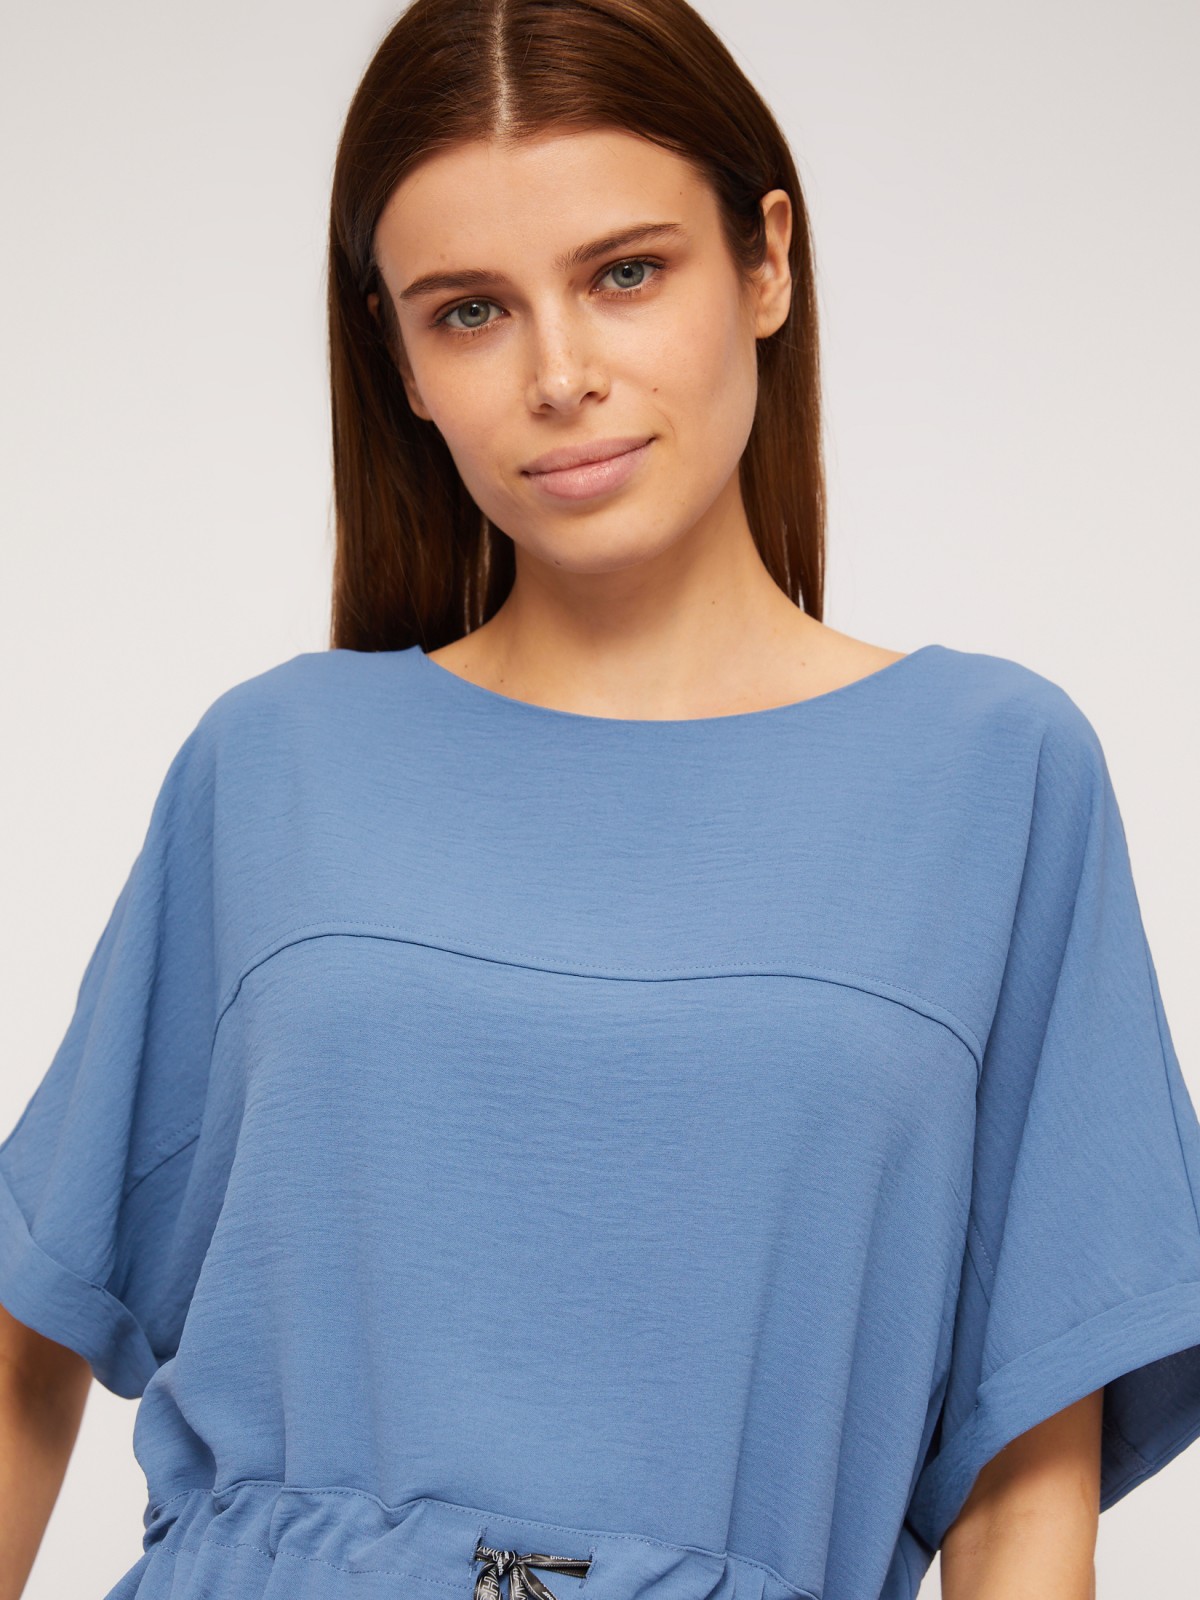 Платье-футболка мини с кулиской на талии zolla 02423824Y773, цвет голубой, размер M - фото 5